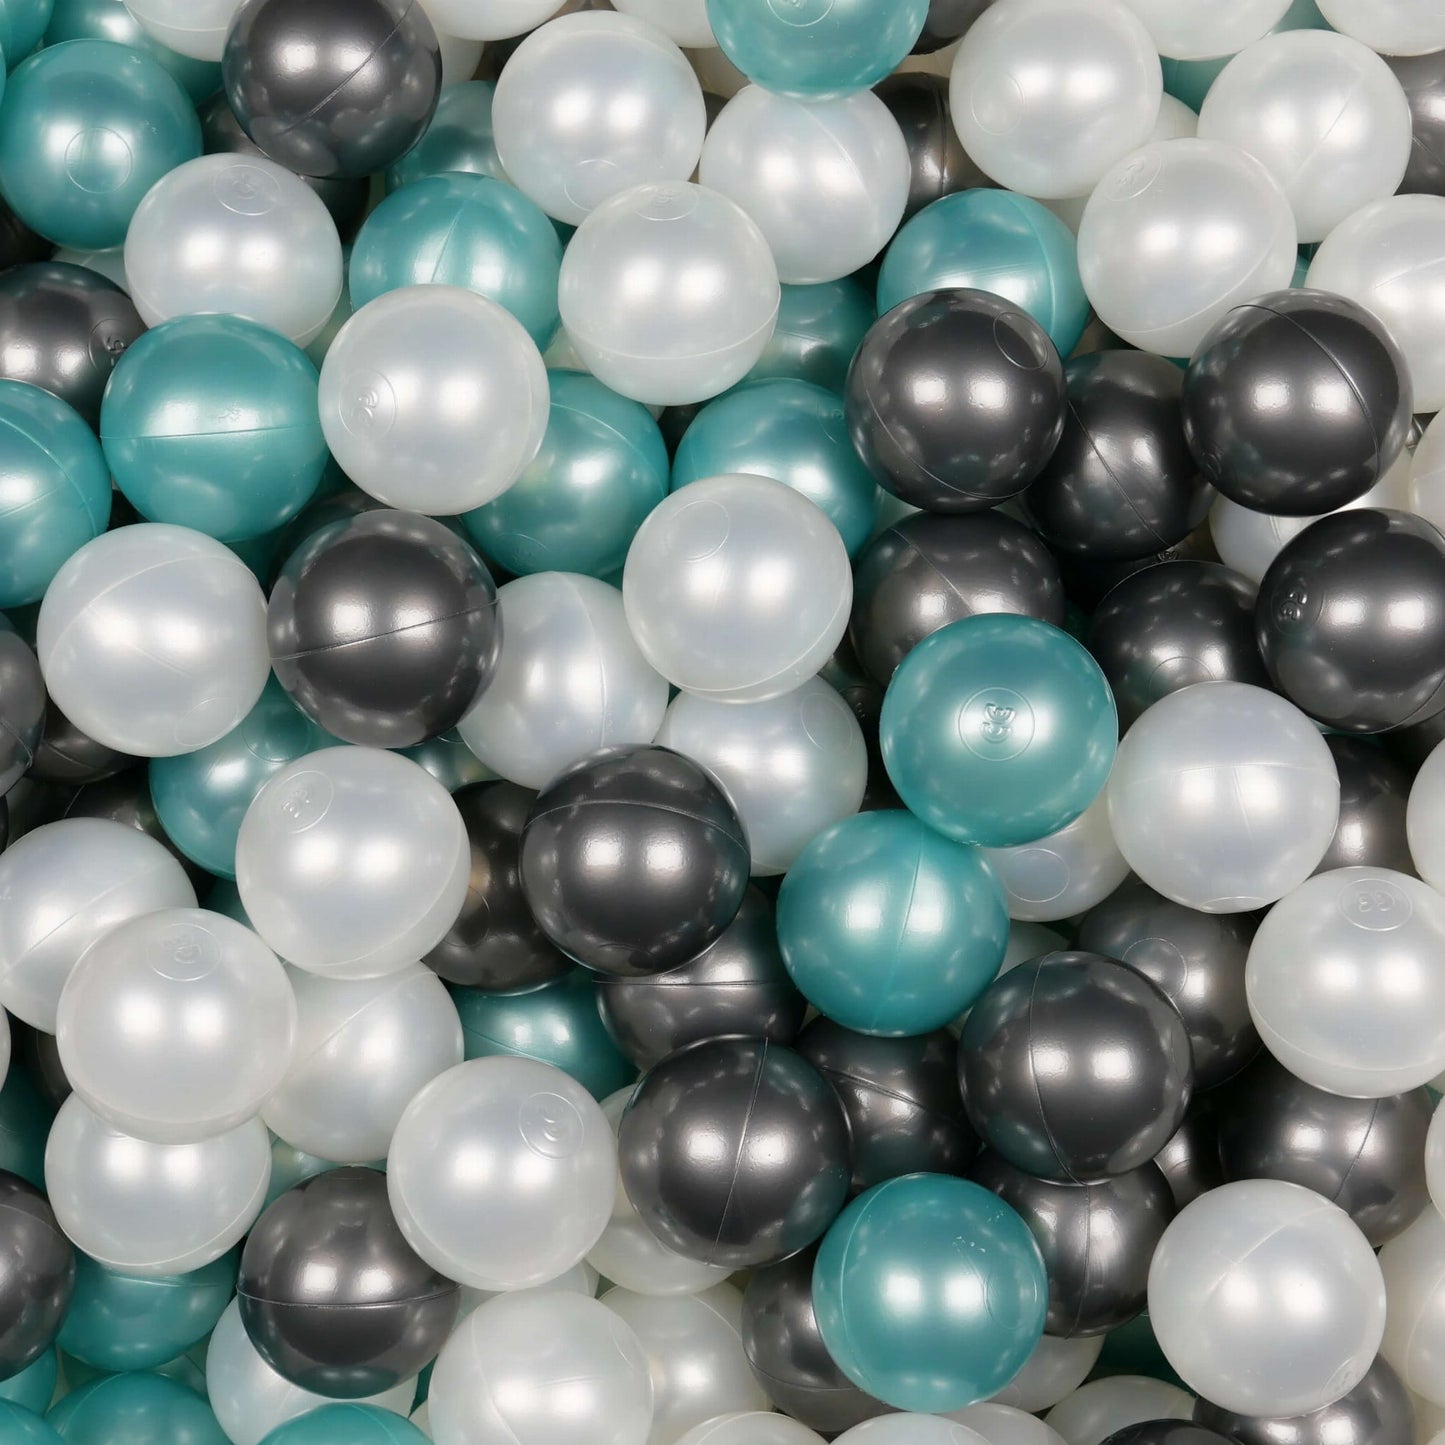 Balles de jeu ø7cm 300 pièces perle, turquoise métallique, graphite métallique